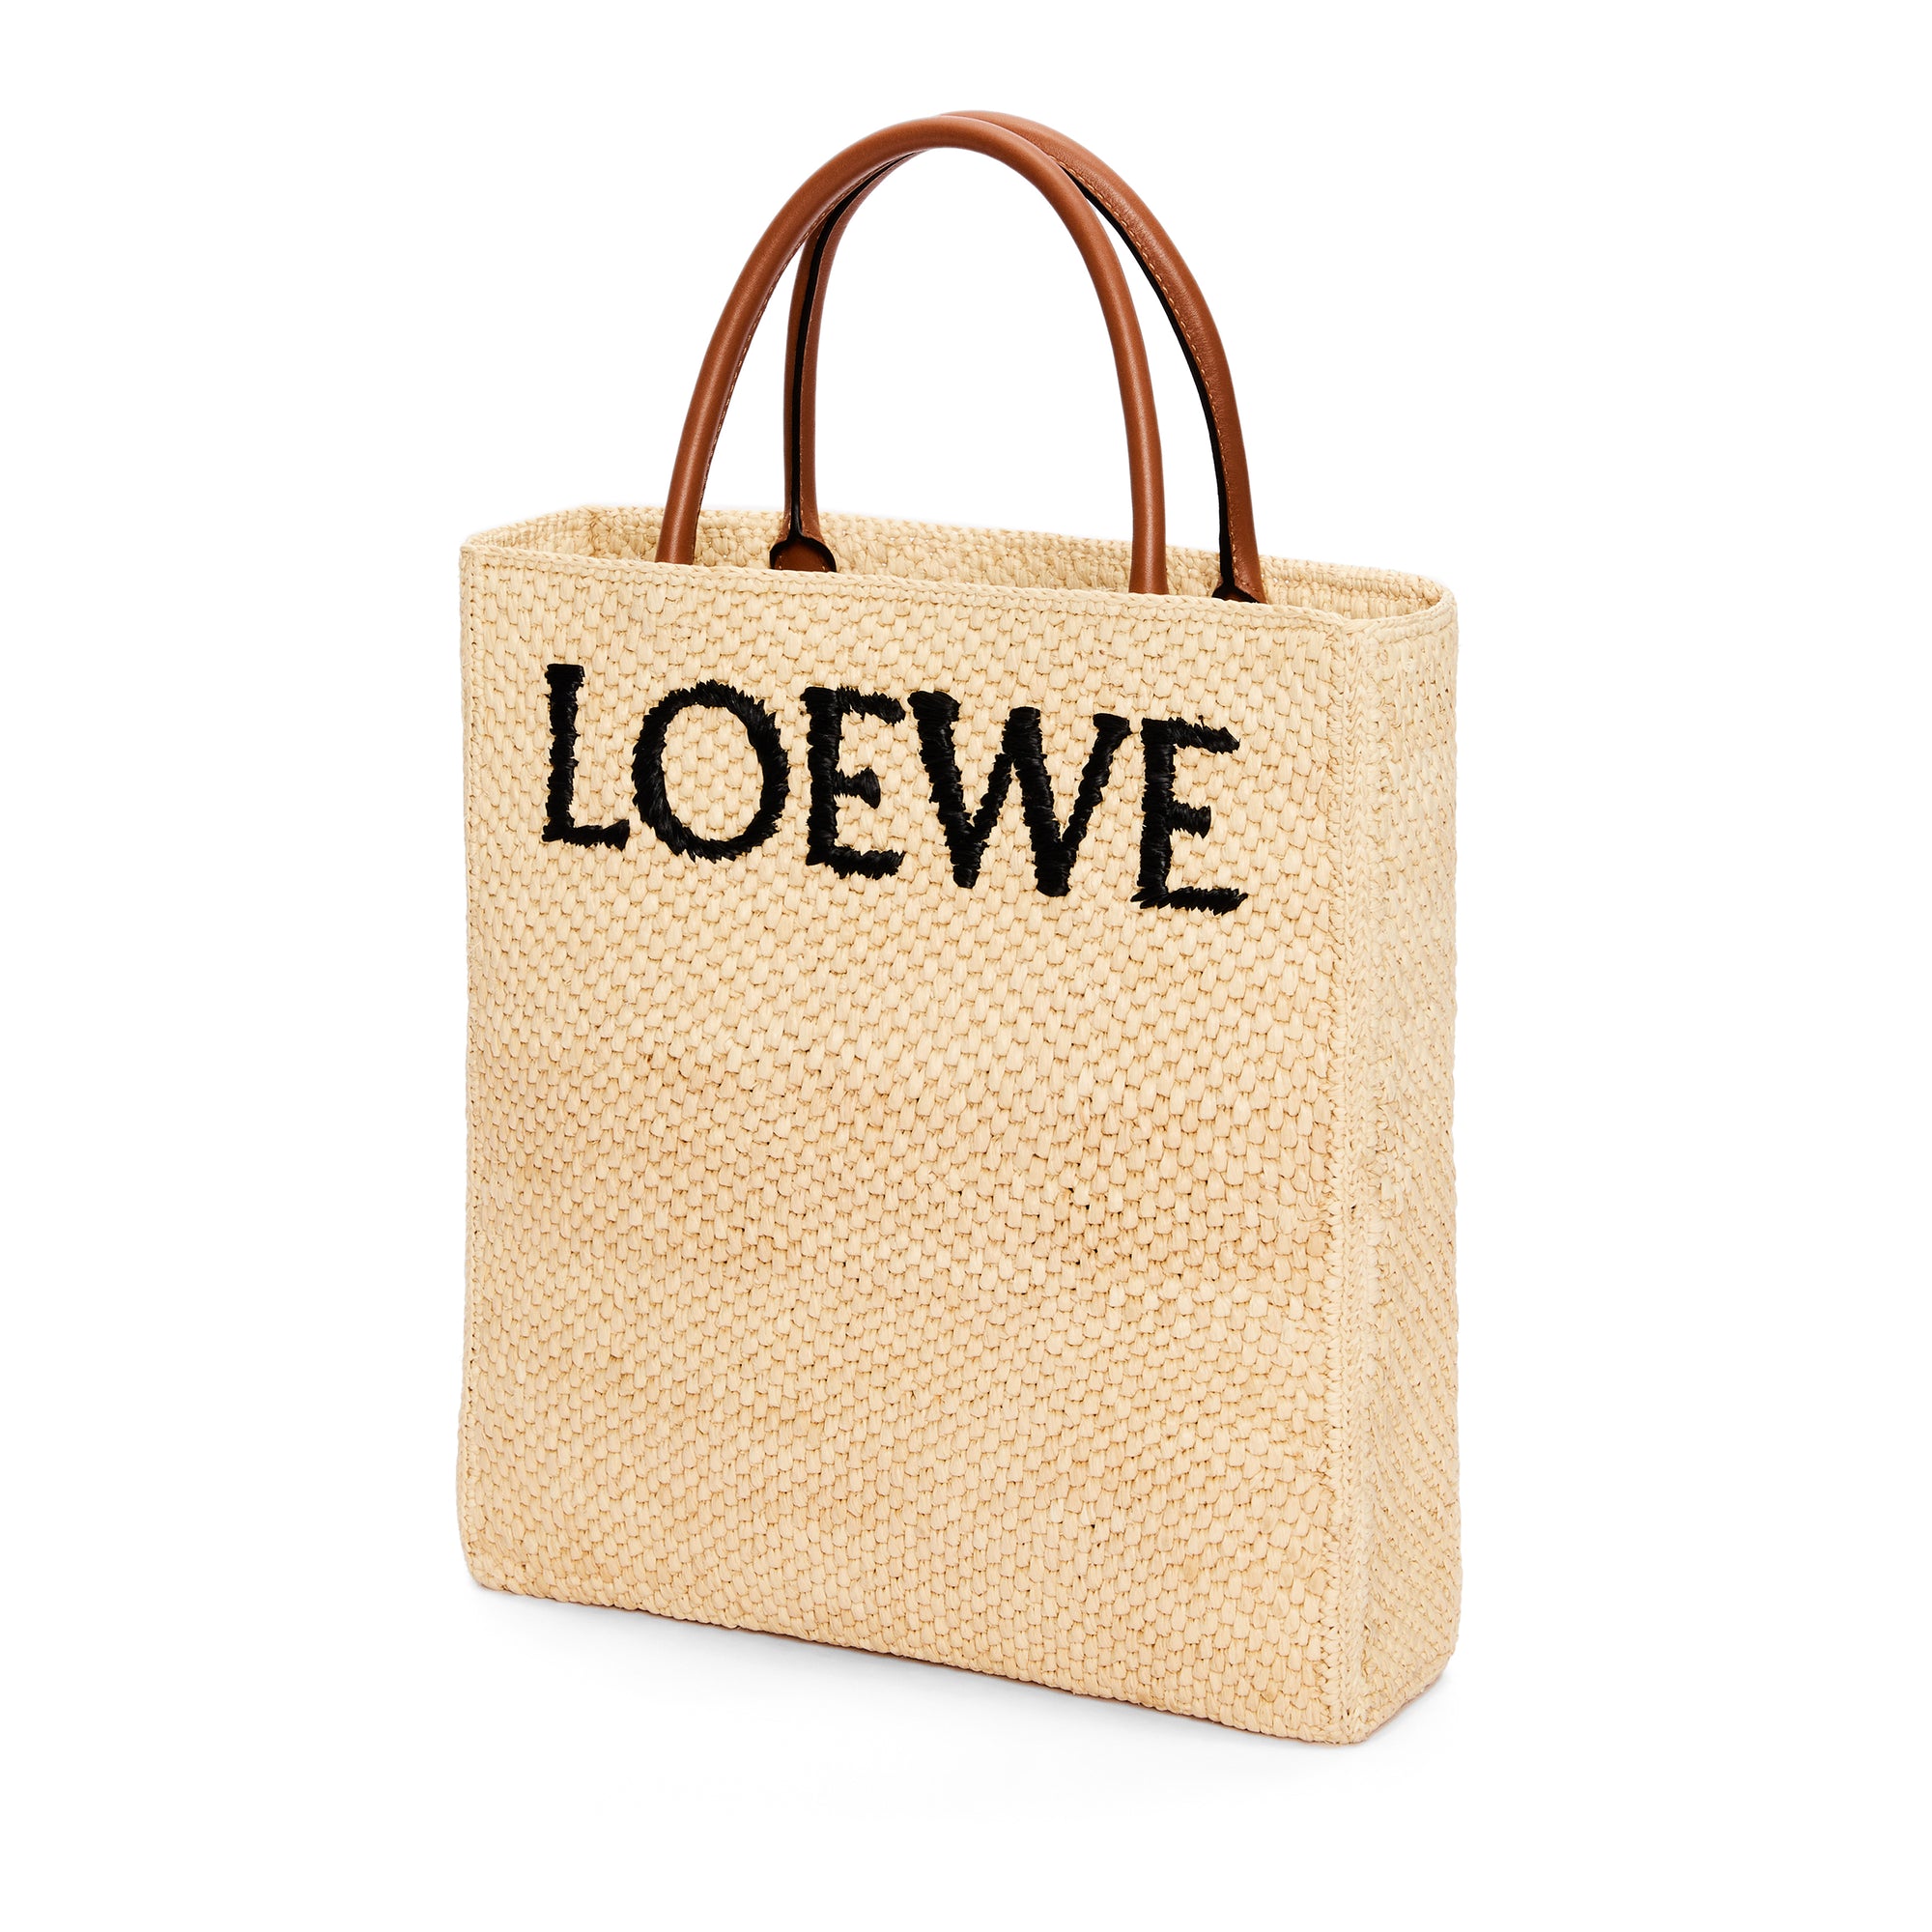 Loewe Women's Large Font Tote